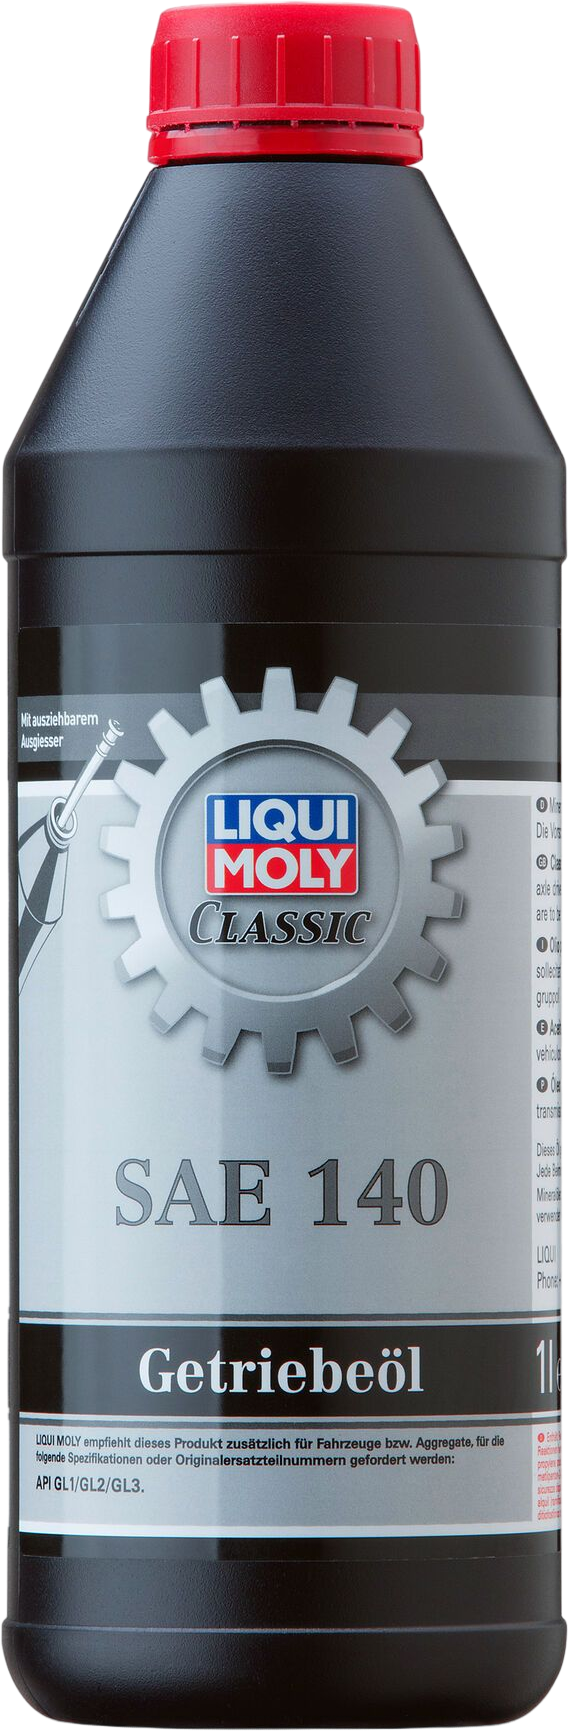 Liqui Moly Classic Transmissieolie SAE 140, 1 lt